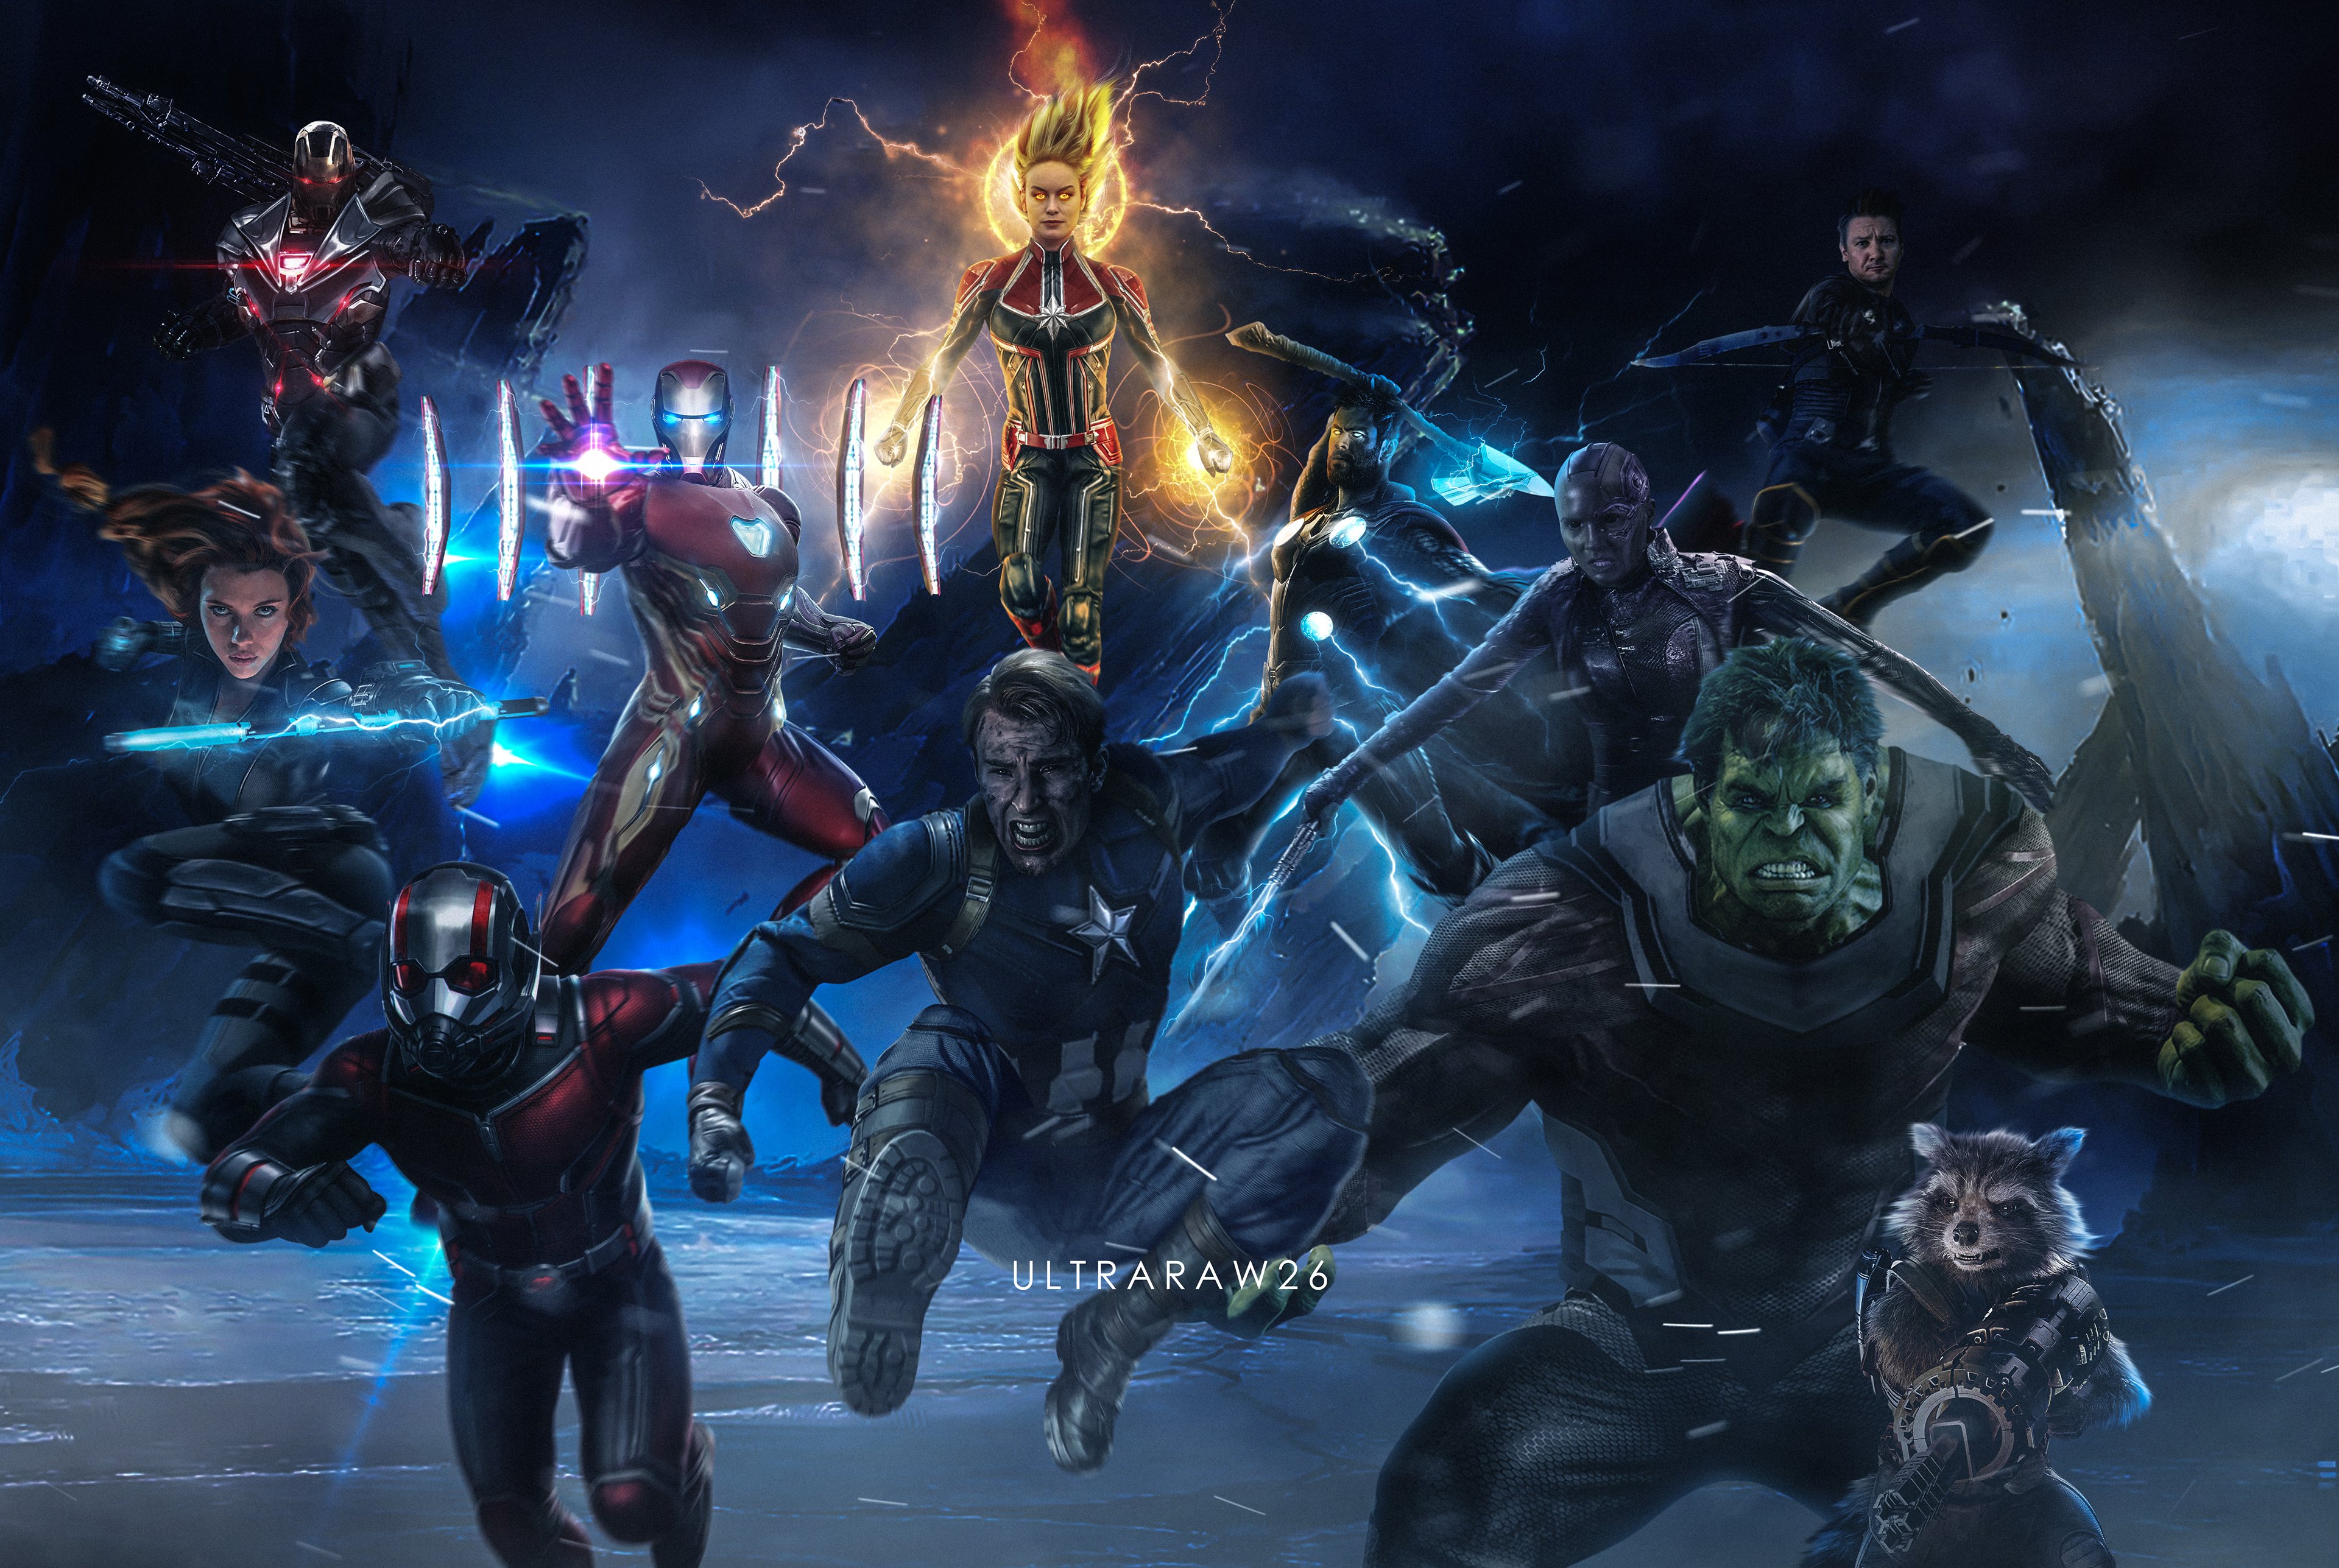 Avengers Endgame 5K Retro Poster Wallpapers